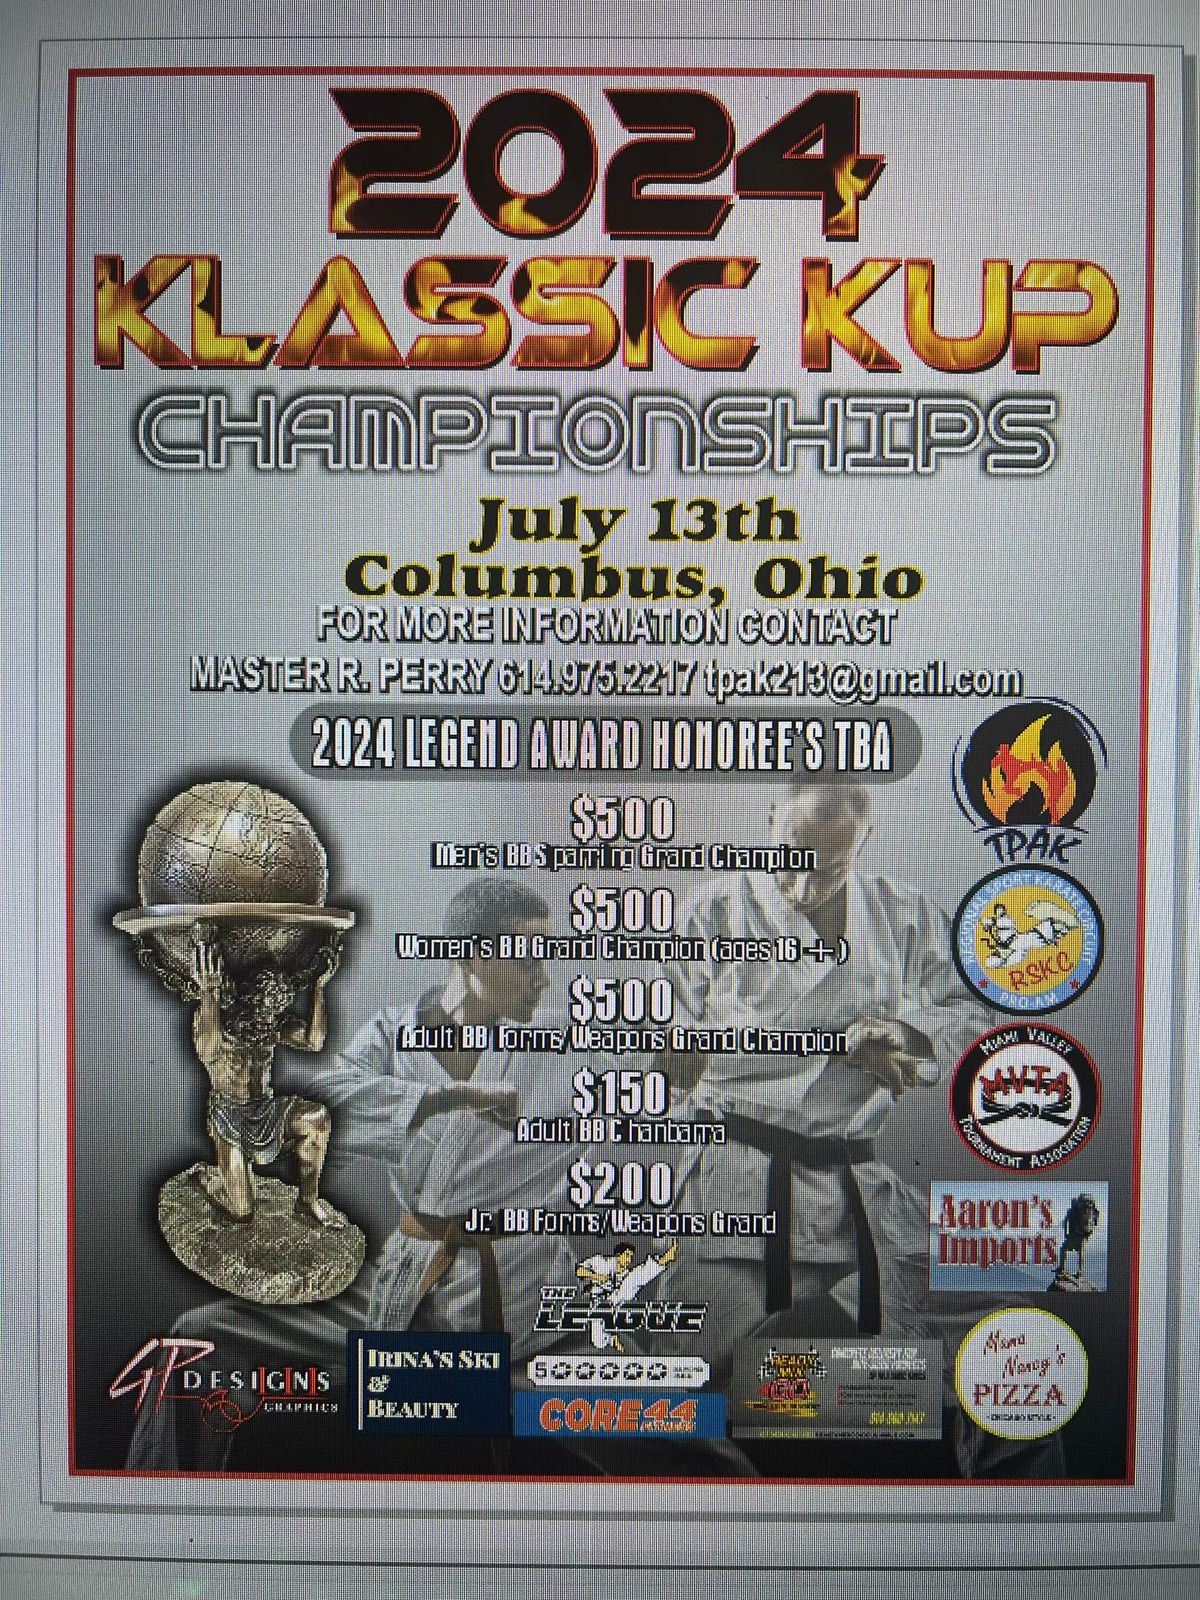 41st Klassic Kup Championships 